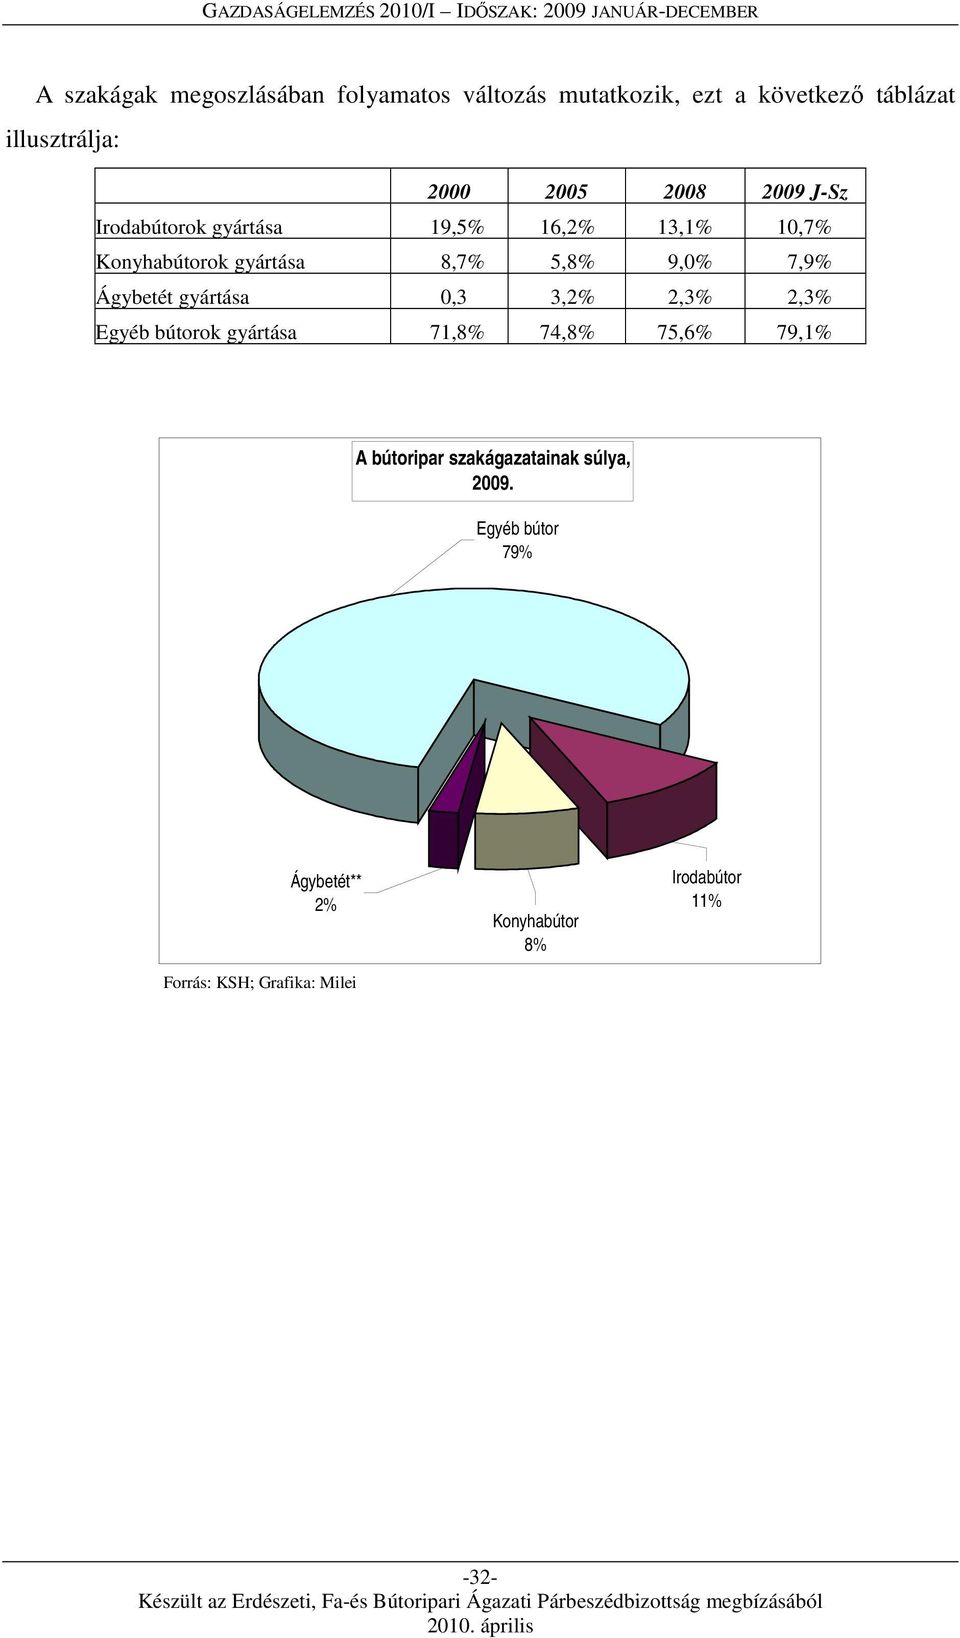 Ágybetét gyártása 0,3 3,2% 2,3% 2,3% Egyéb bútorok gyártása 71,8% 74,8% 75,6% 79,1% A bútoripar